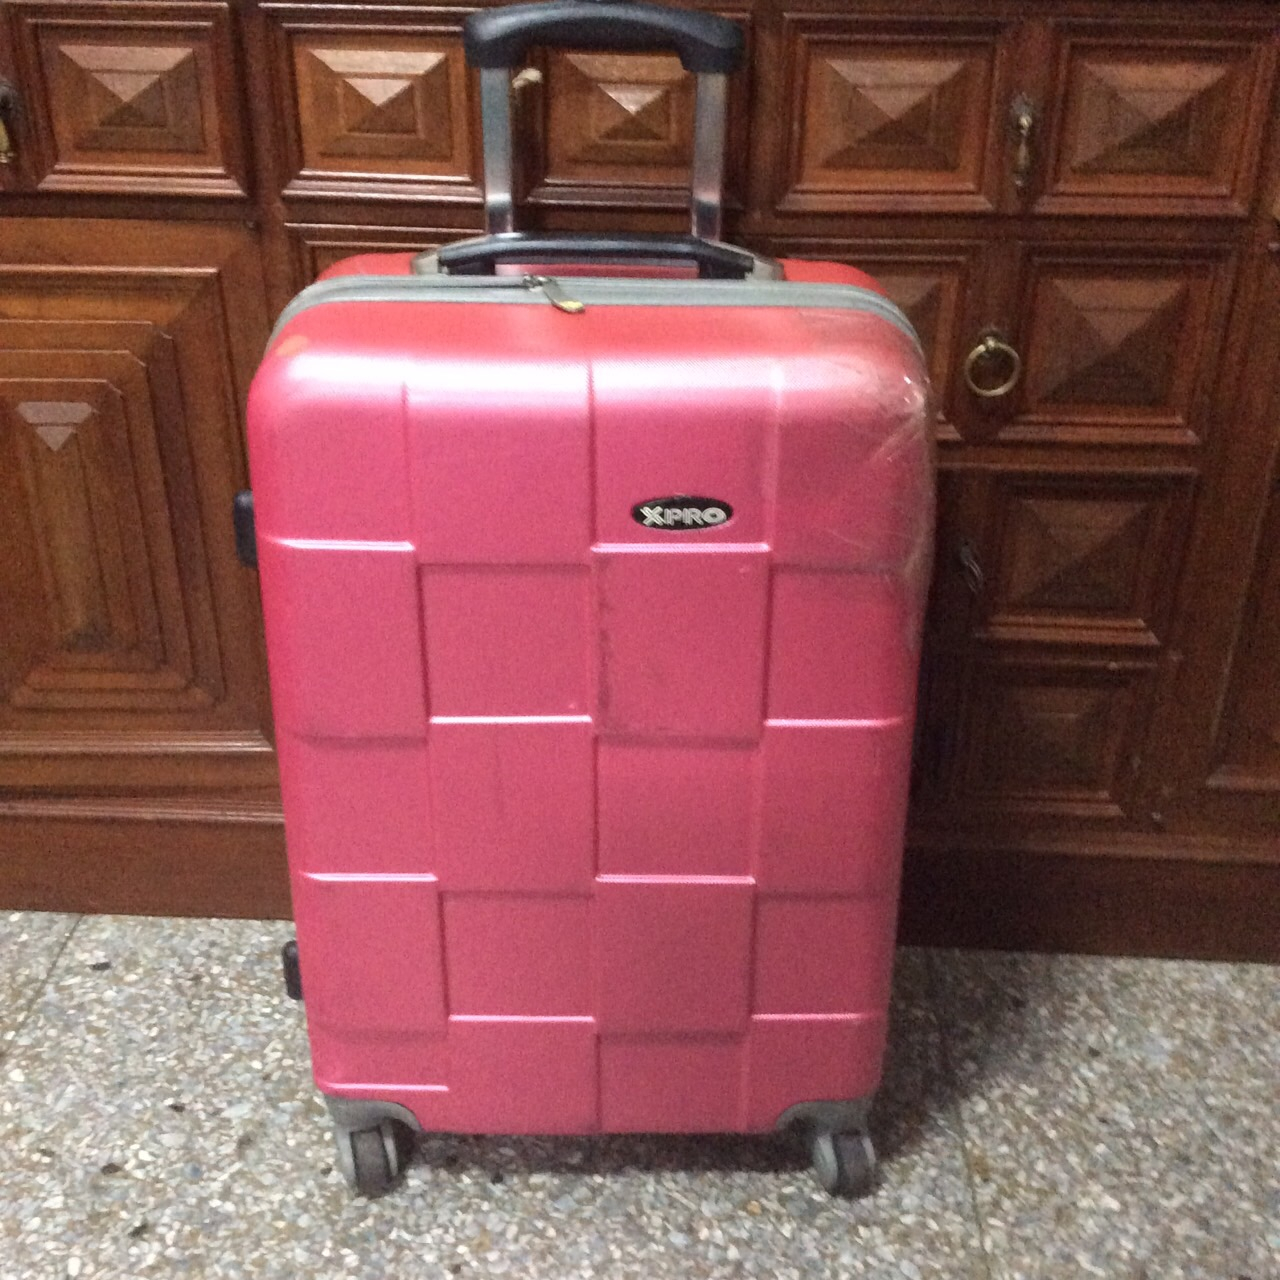 中型旅行箱 XPRO 拉杆箱 26吋 行李箱，2面把手 旅行箱，硬殼二手行李箱 桃色 台北市 便宜出清